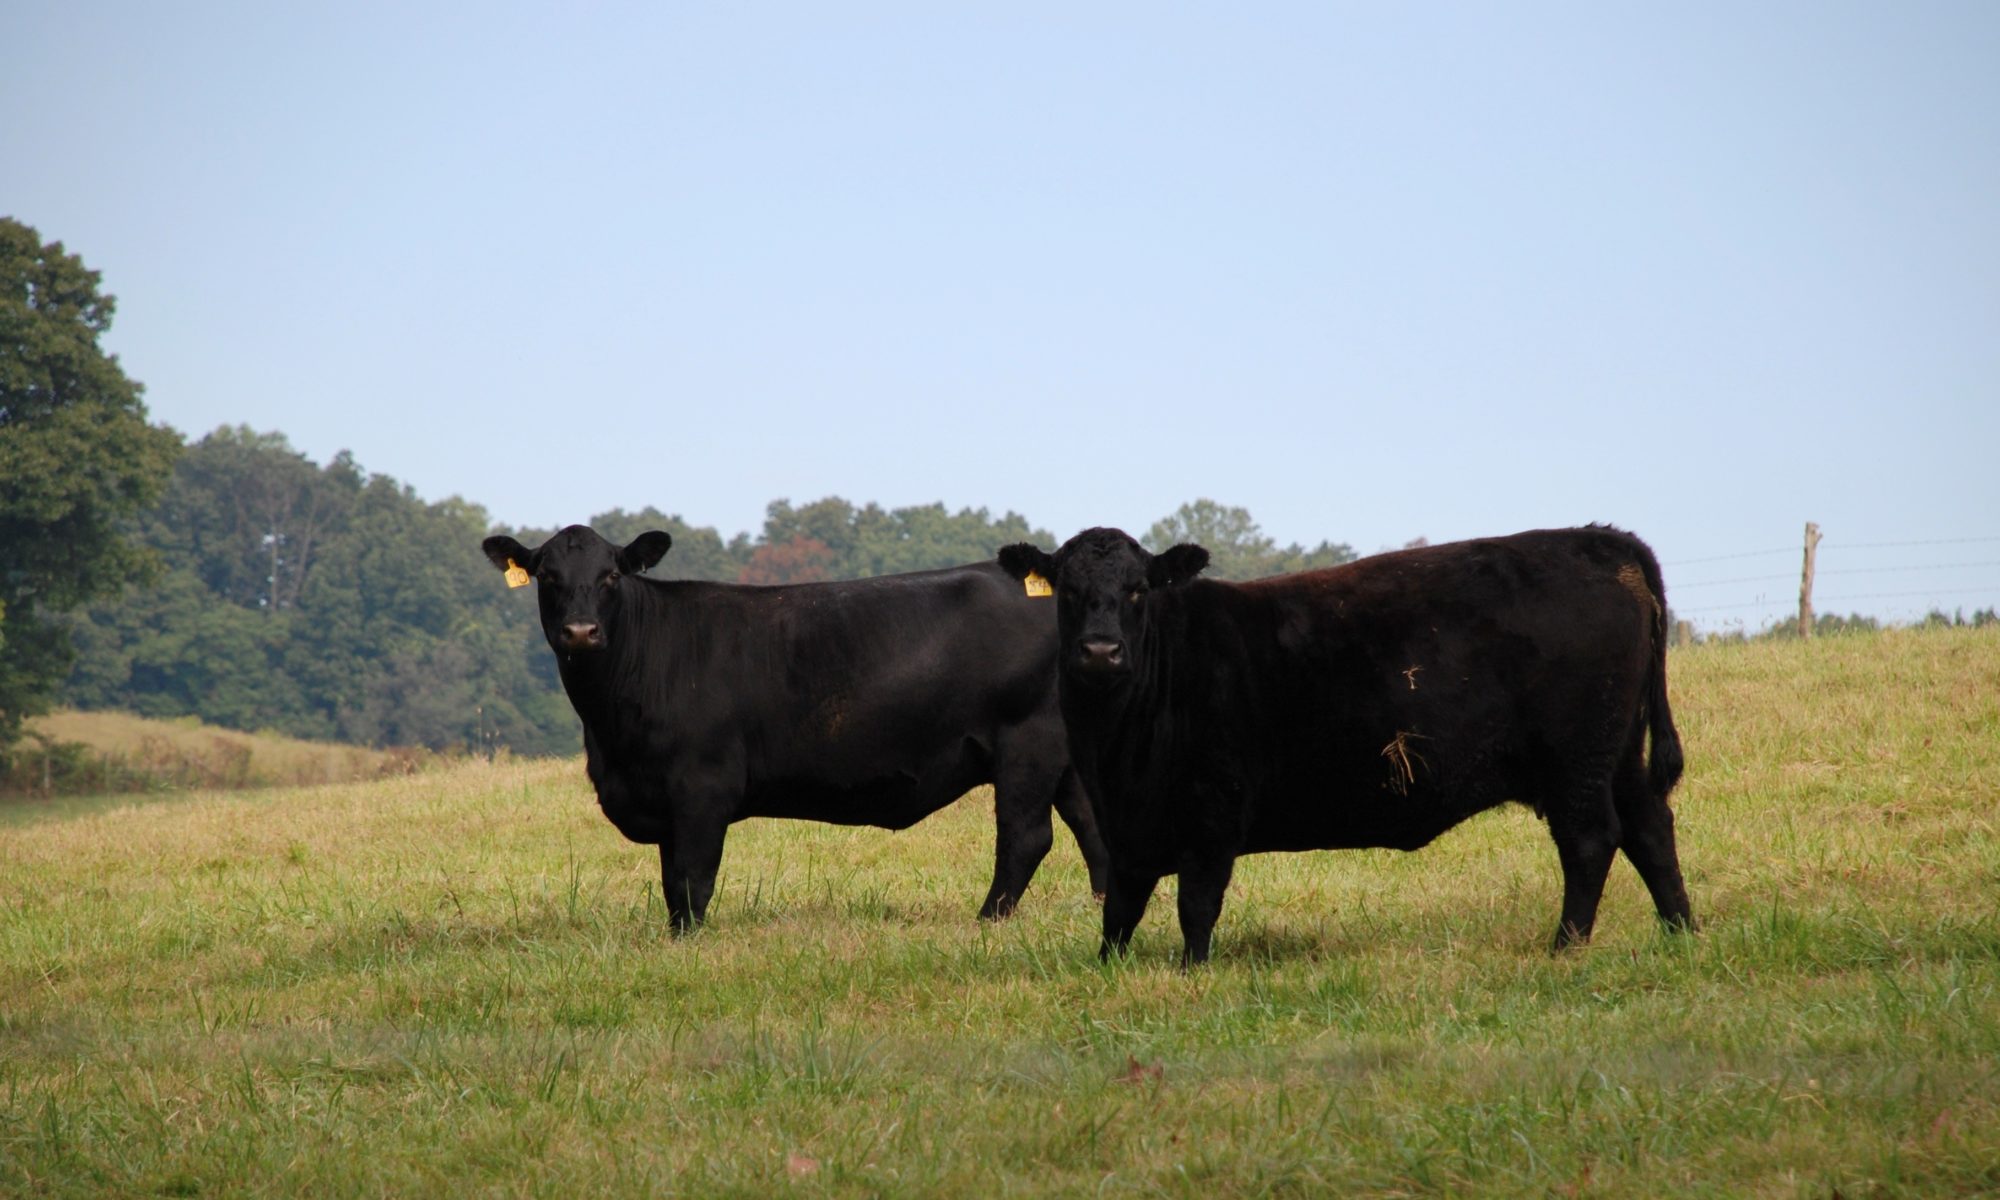 cows in field